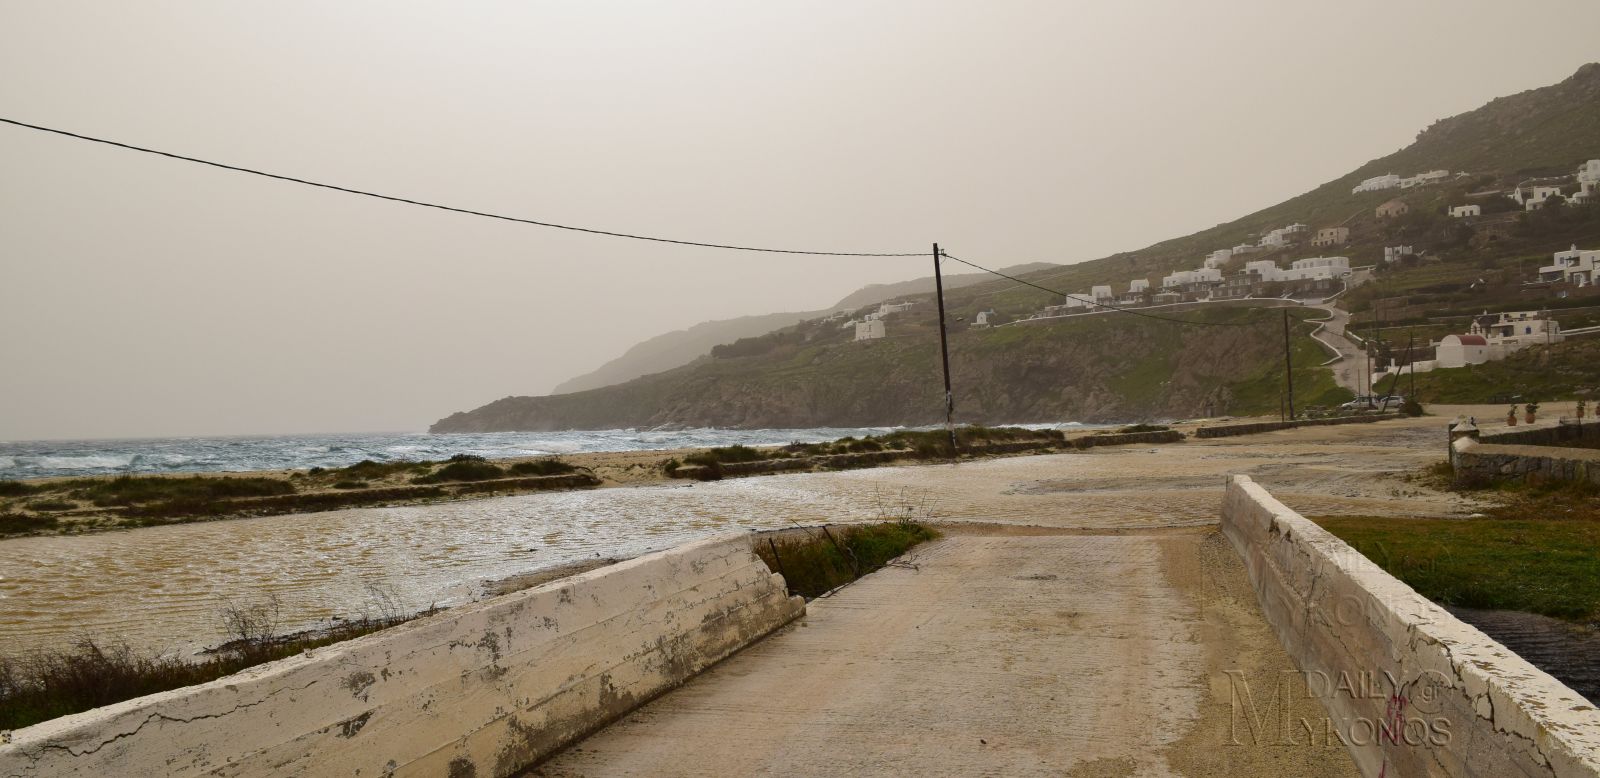 (φωτο) Μύκονος - κακοκαιρία: Στα δύο κομμένο το Καλό Λιβάδι, ο δρόμος μετατράπηκε σε λίμνη!